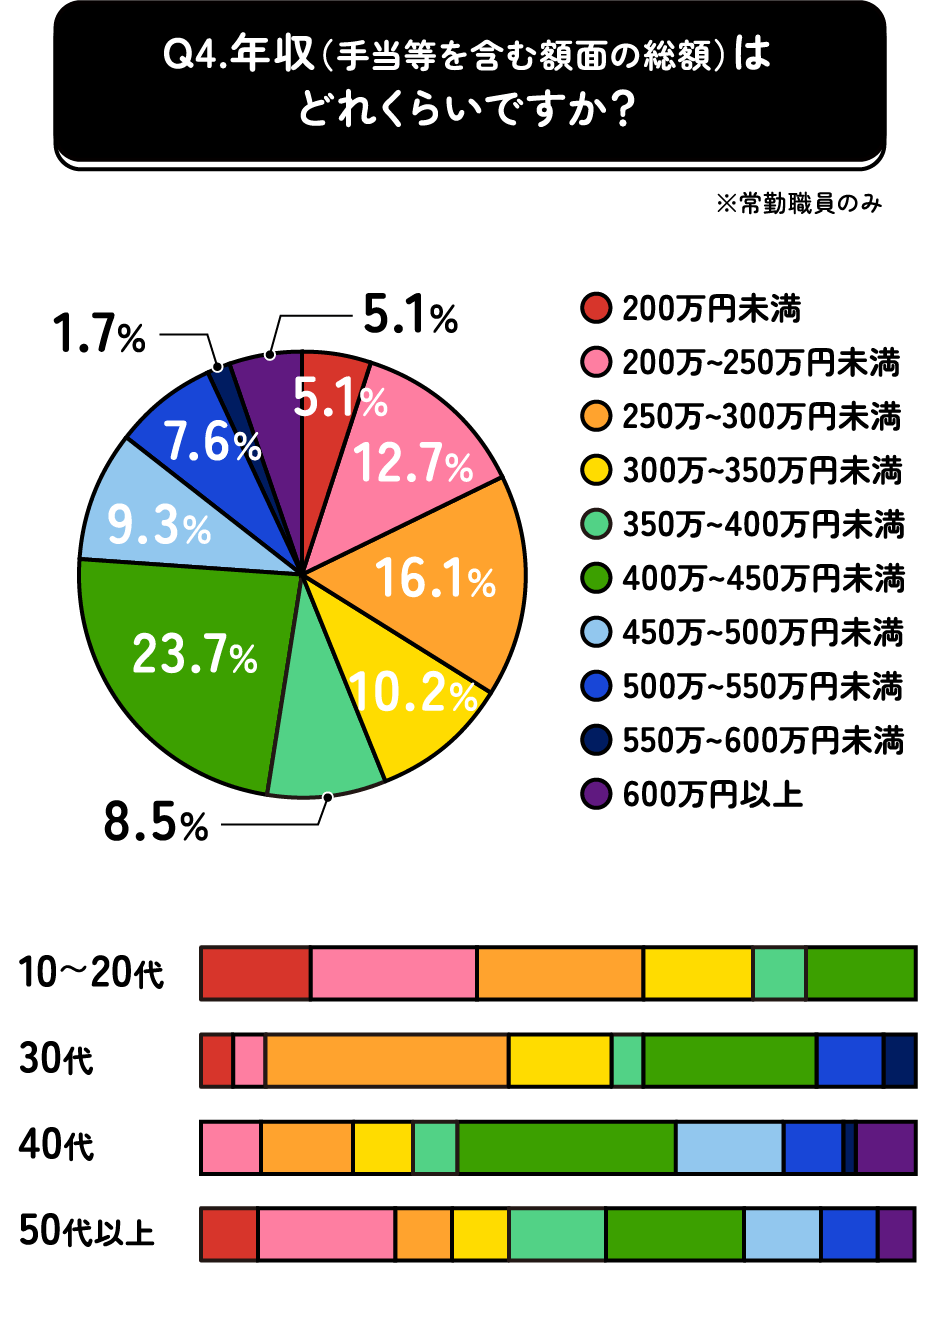 年収に関するグラフ。40～50代は400～450万円が多い。